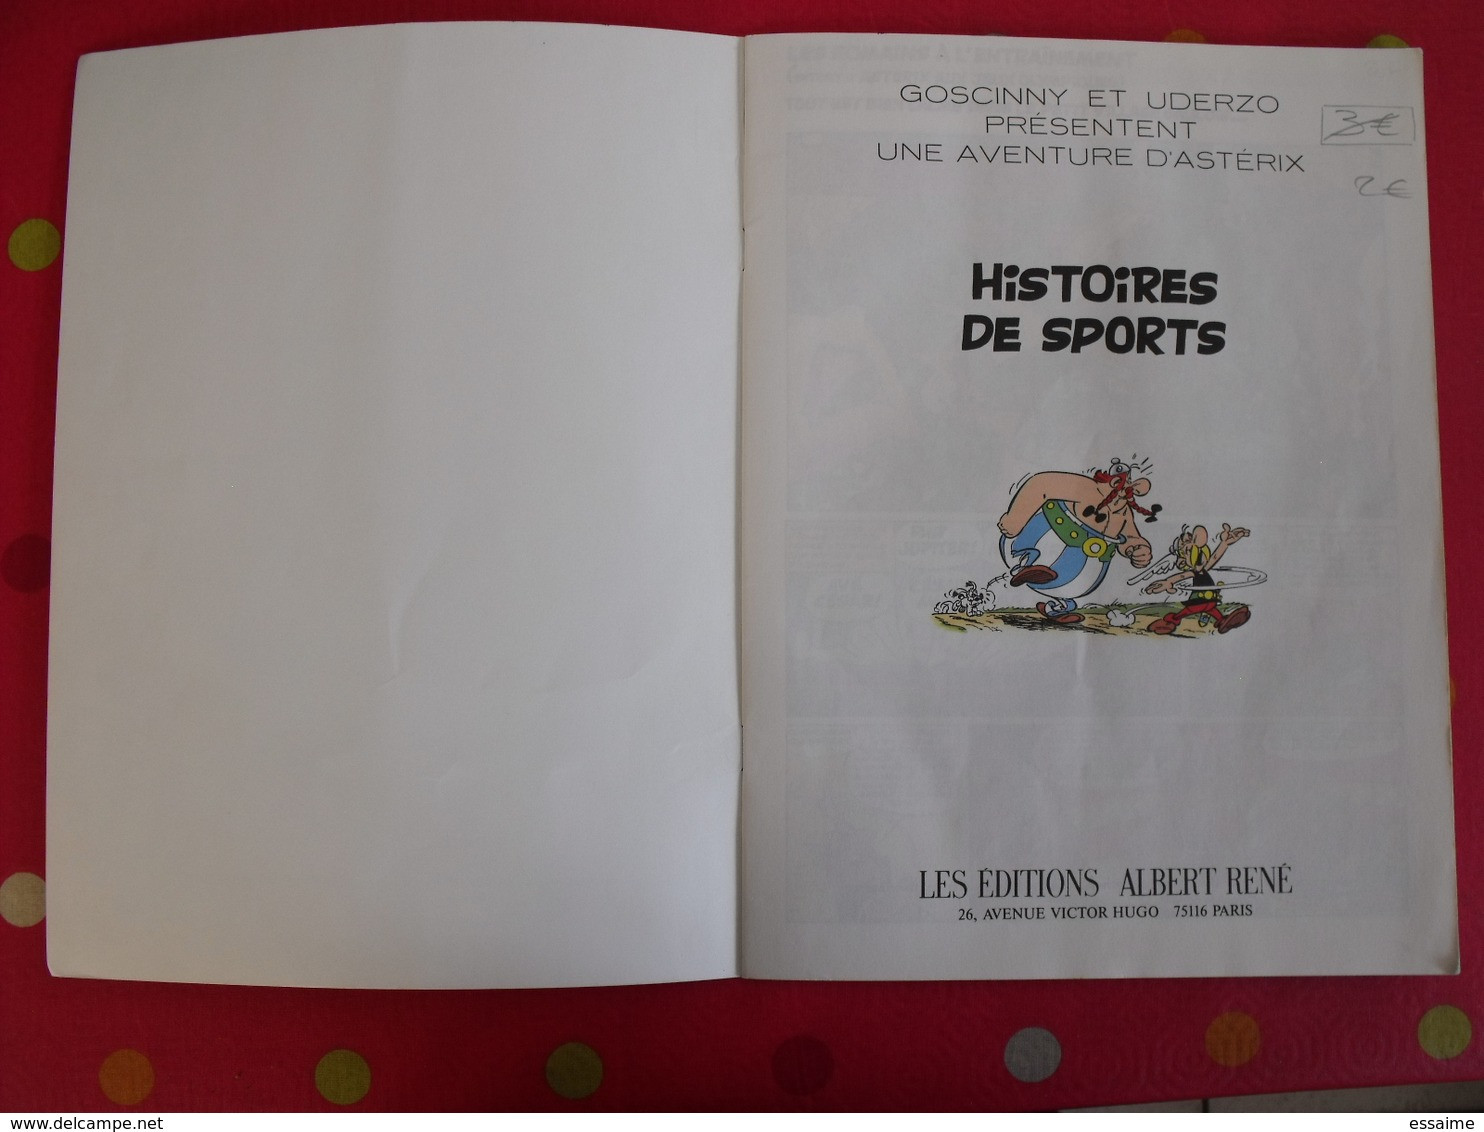 Astérix, Histoire De Sports. Goscinny Et Uderzo. éditions Albert-René. Offert Par Total. 1992 - Astérix